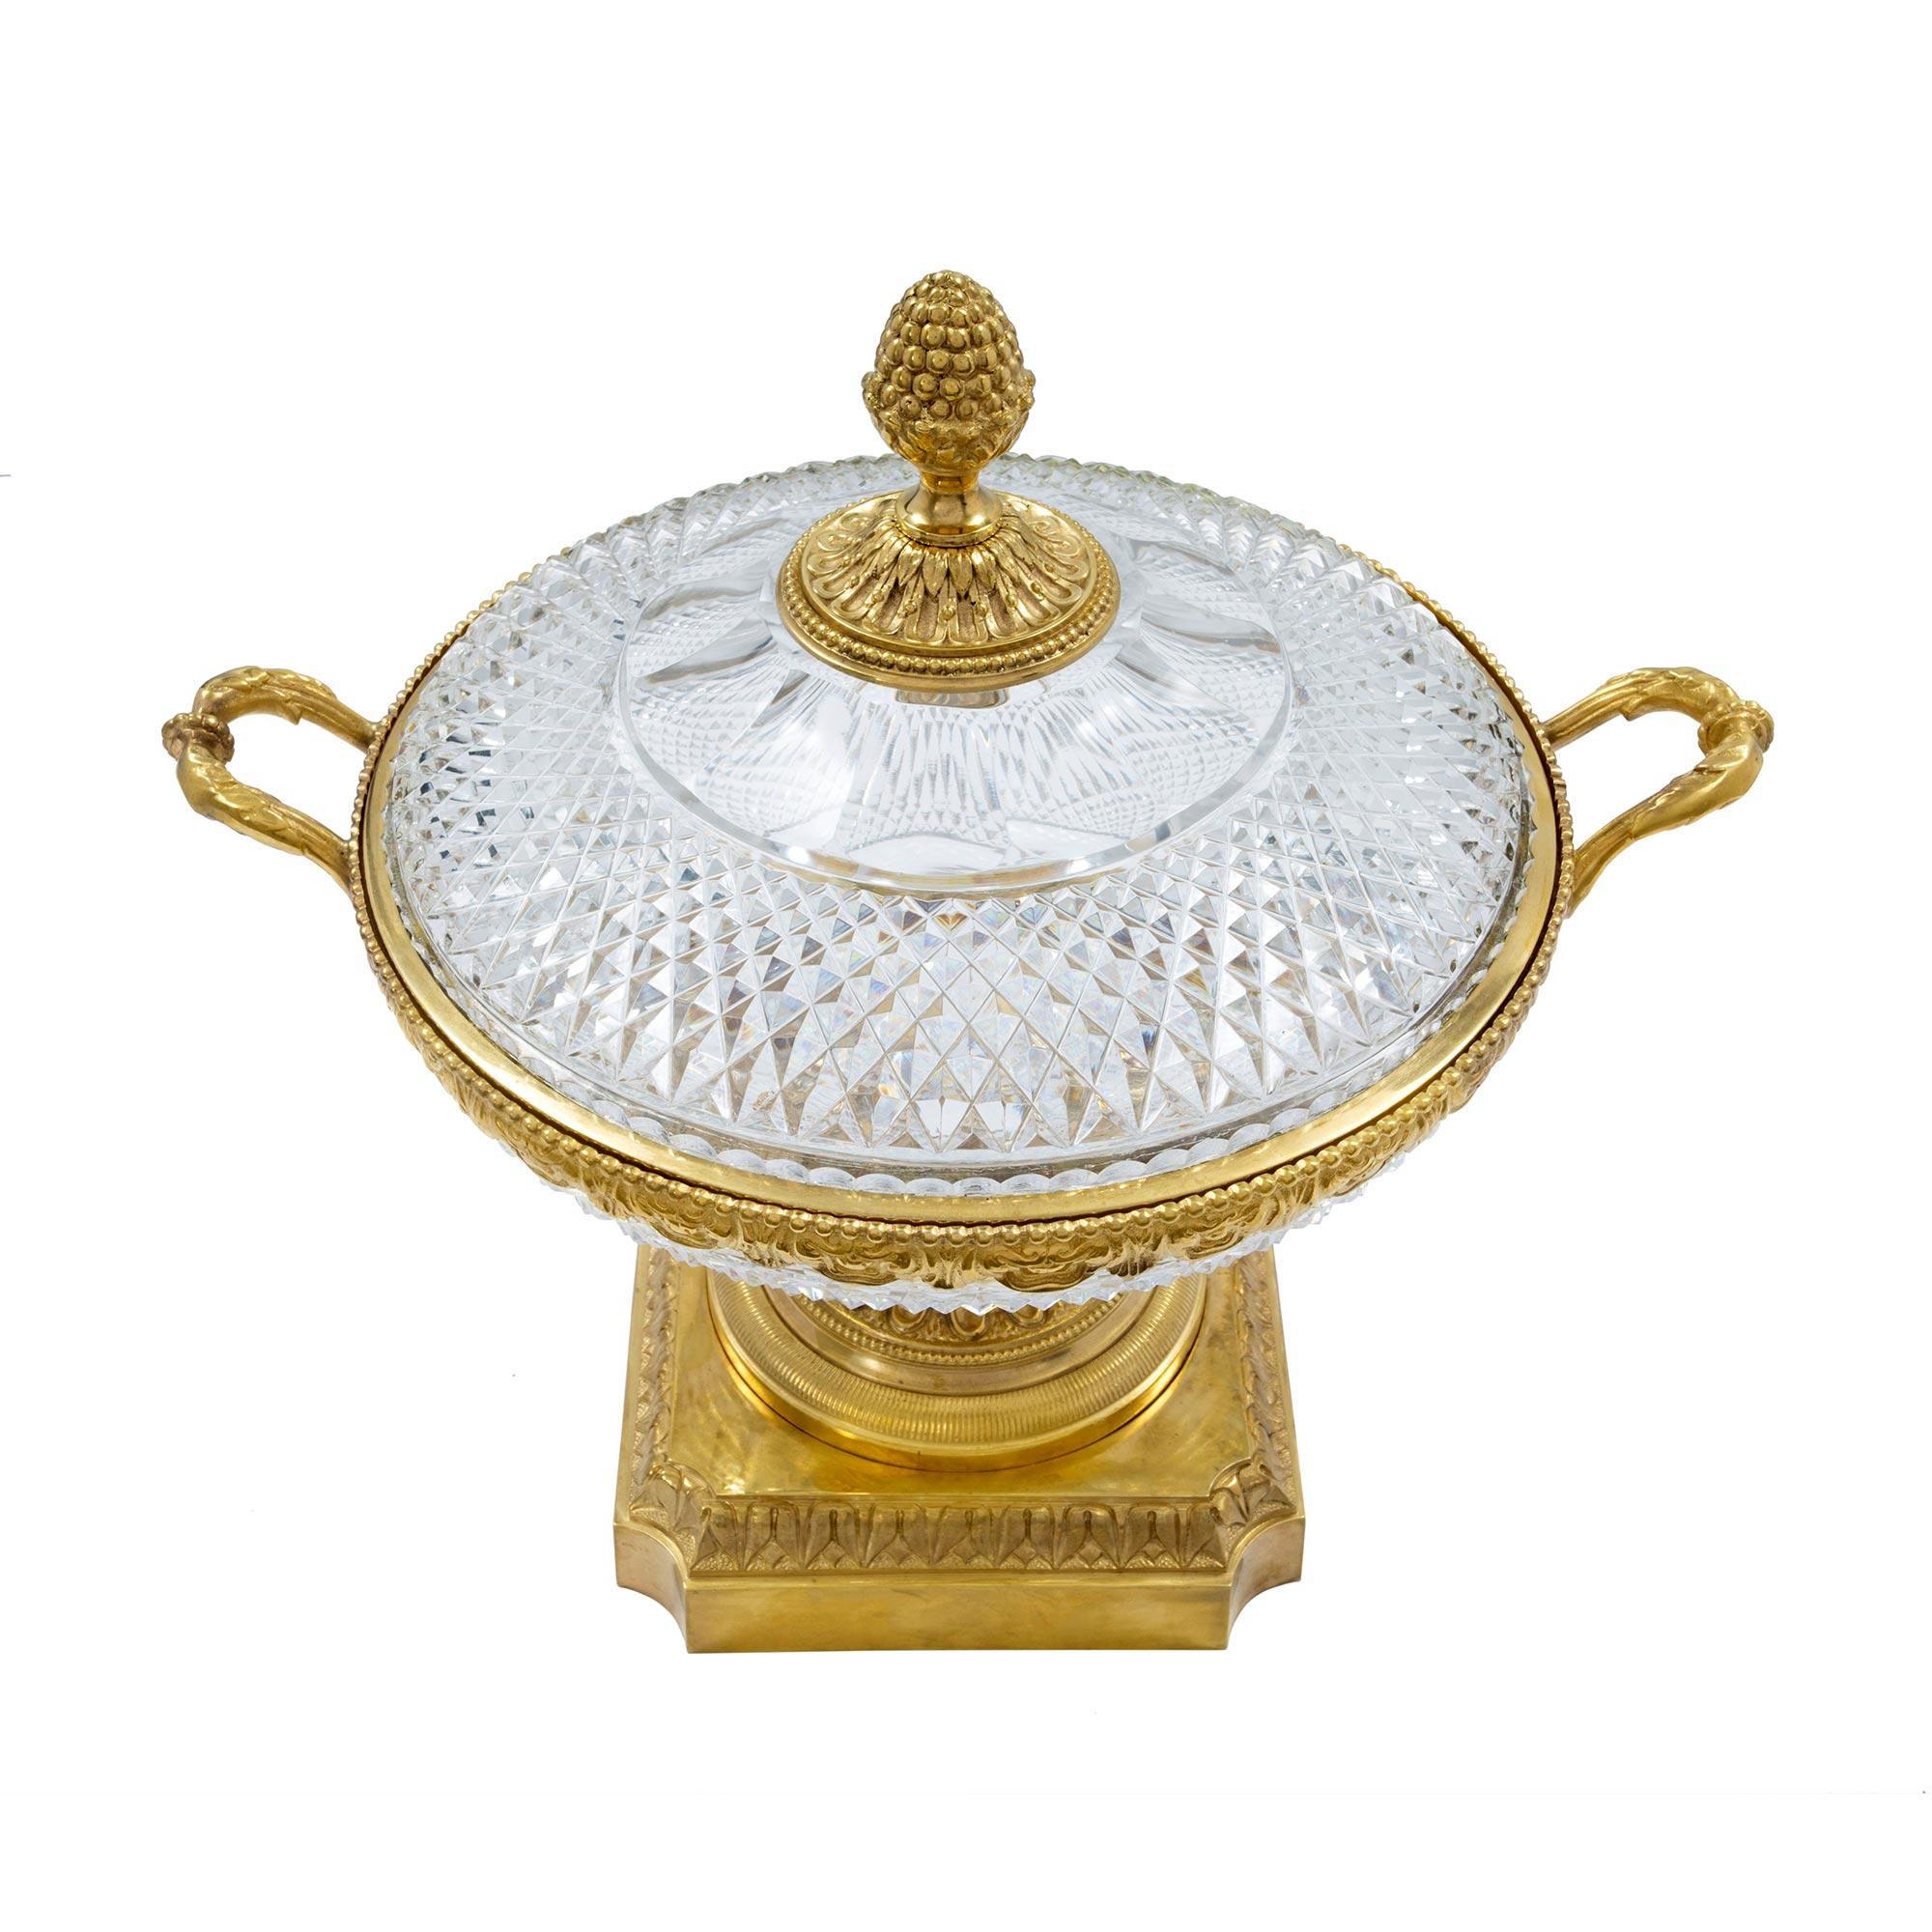 Un spectaculaire centre de table en cristal de Baccarat et bronze doré de style Louis XVI du milieu du 19e siècle. La pièce centrale est surélevée par une base carrée et tachetée en bronze doré avec des coins concaves et une bordure moulée richement